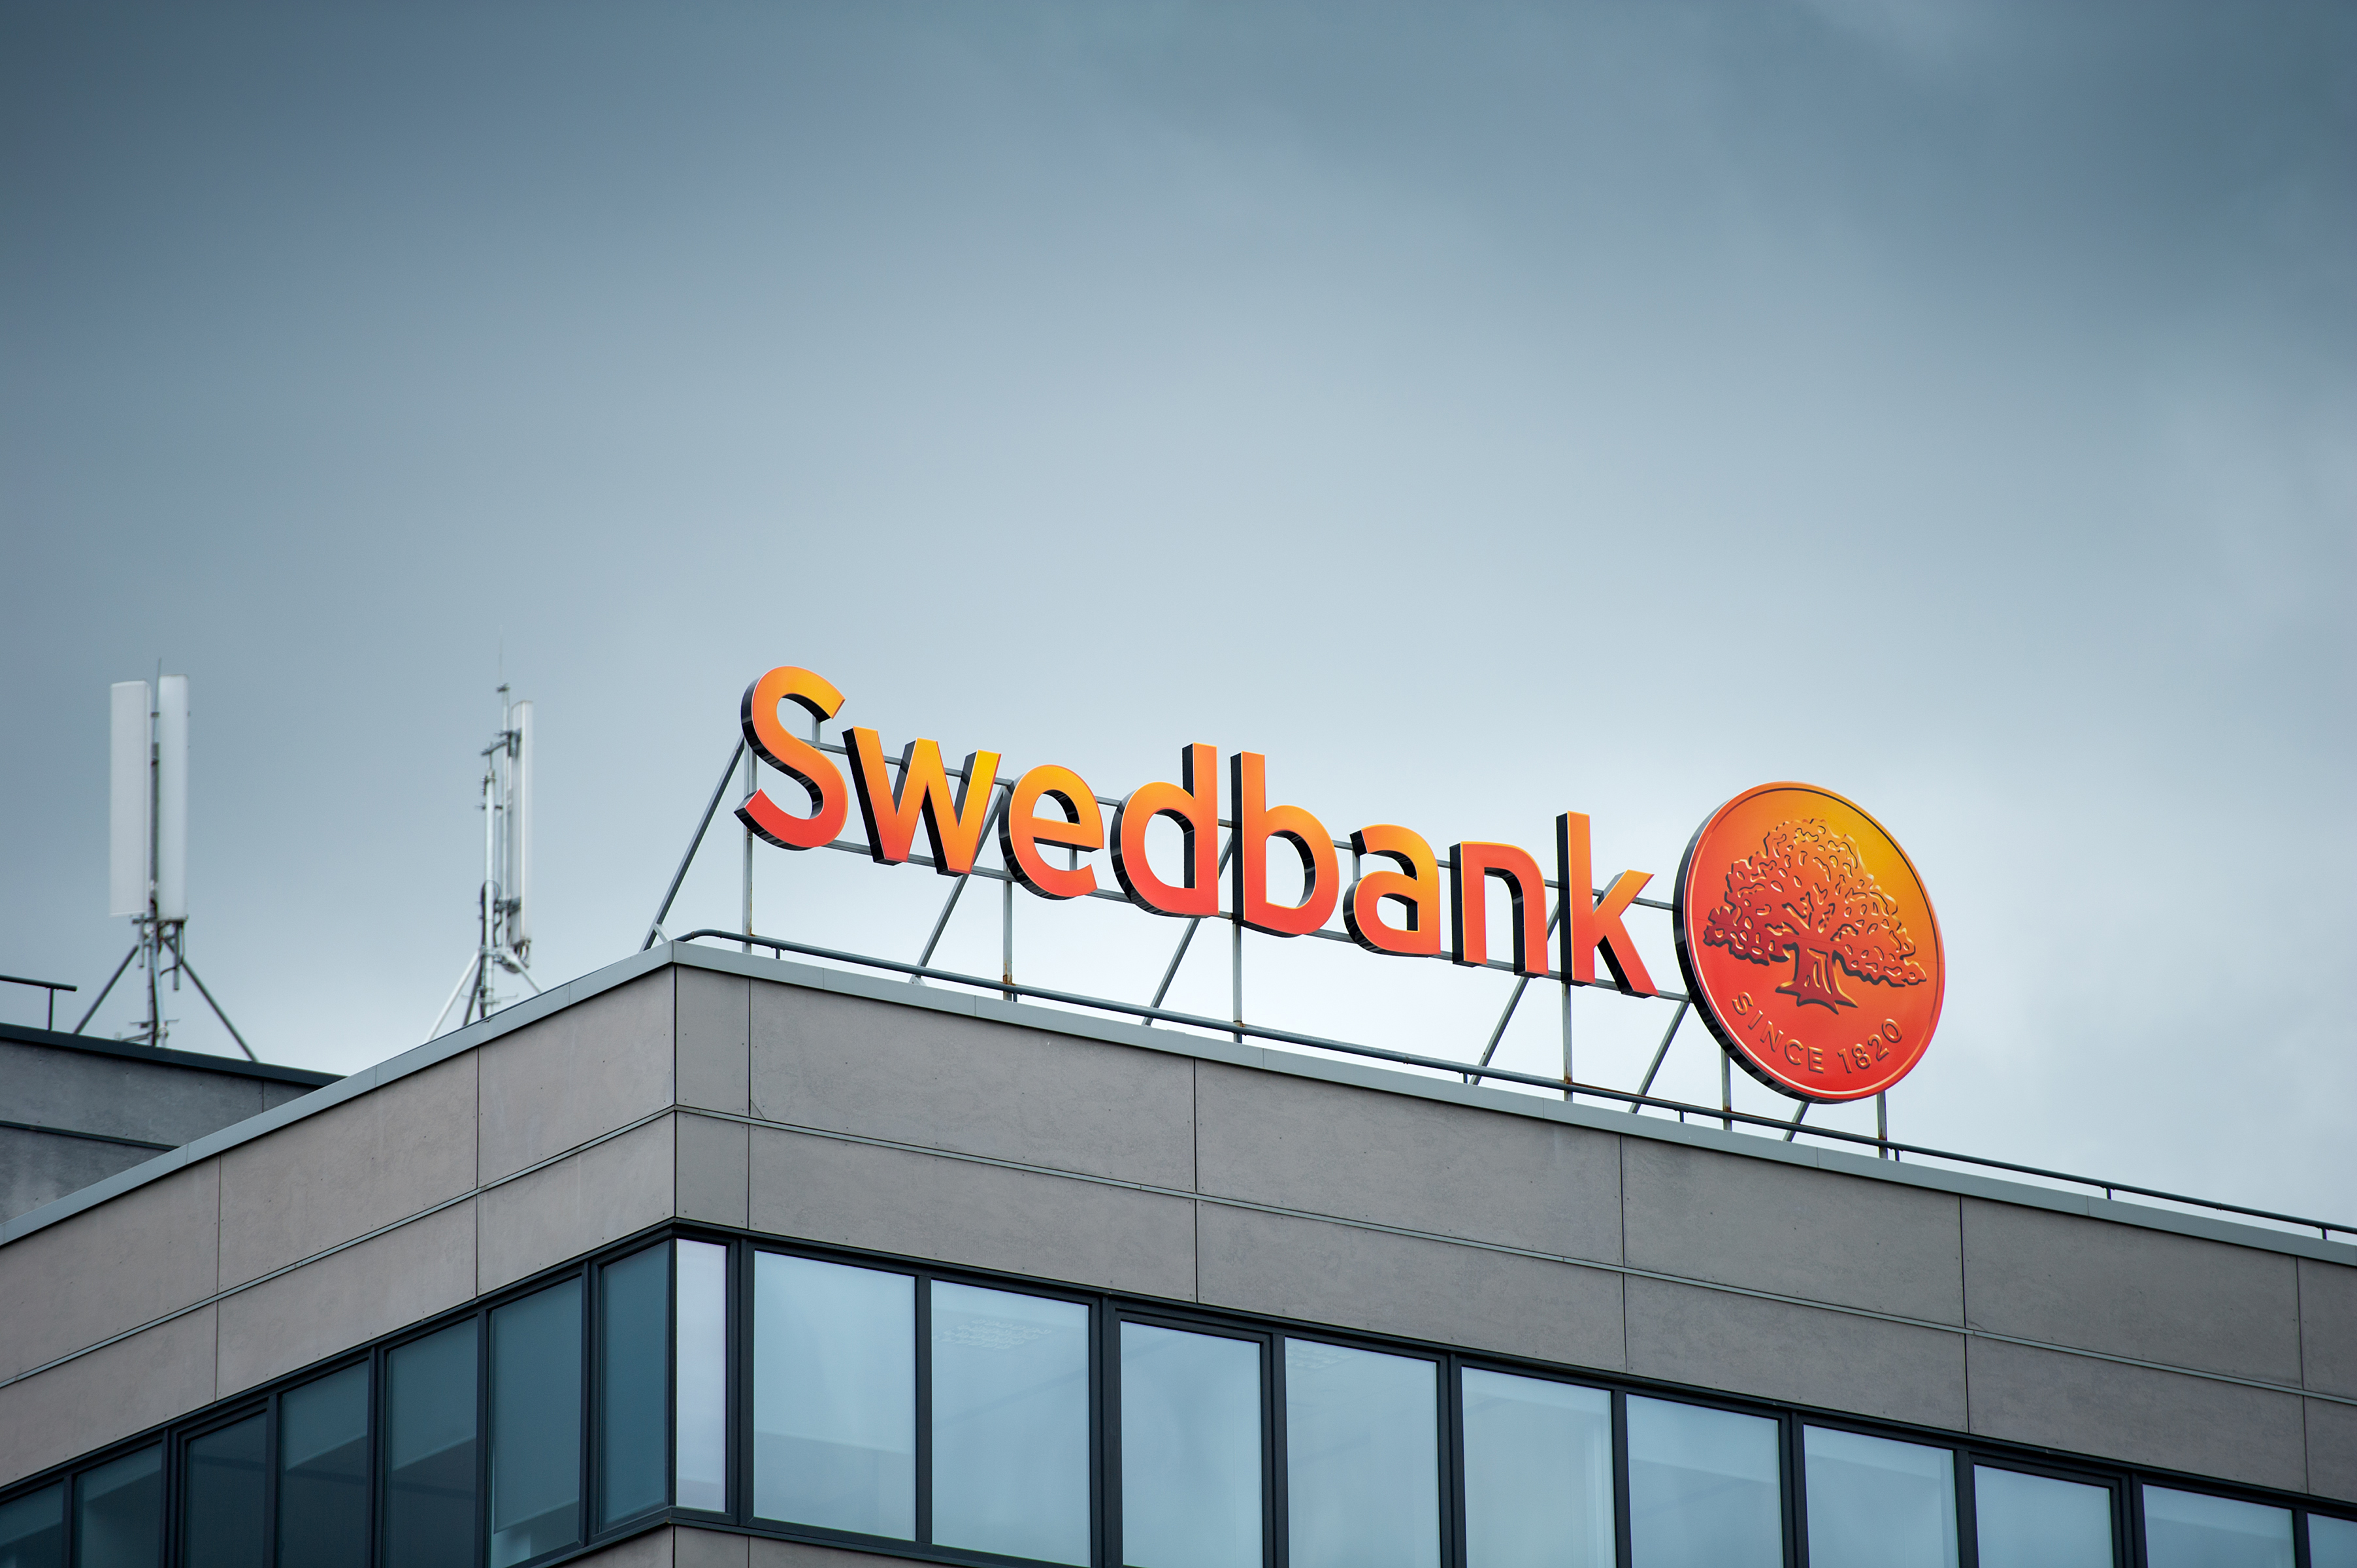 Шведский банк, который обслуживает клиентов во всем мире